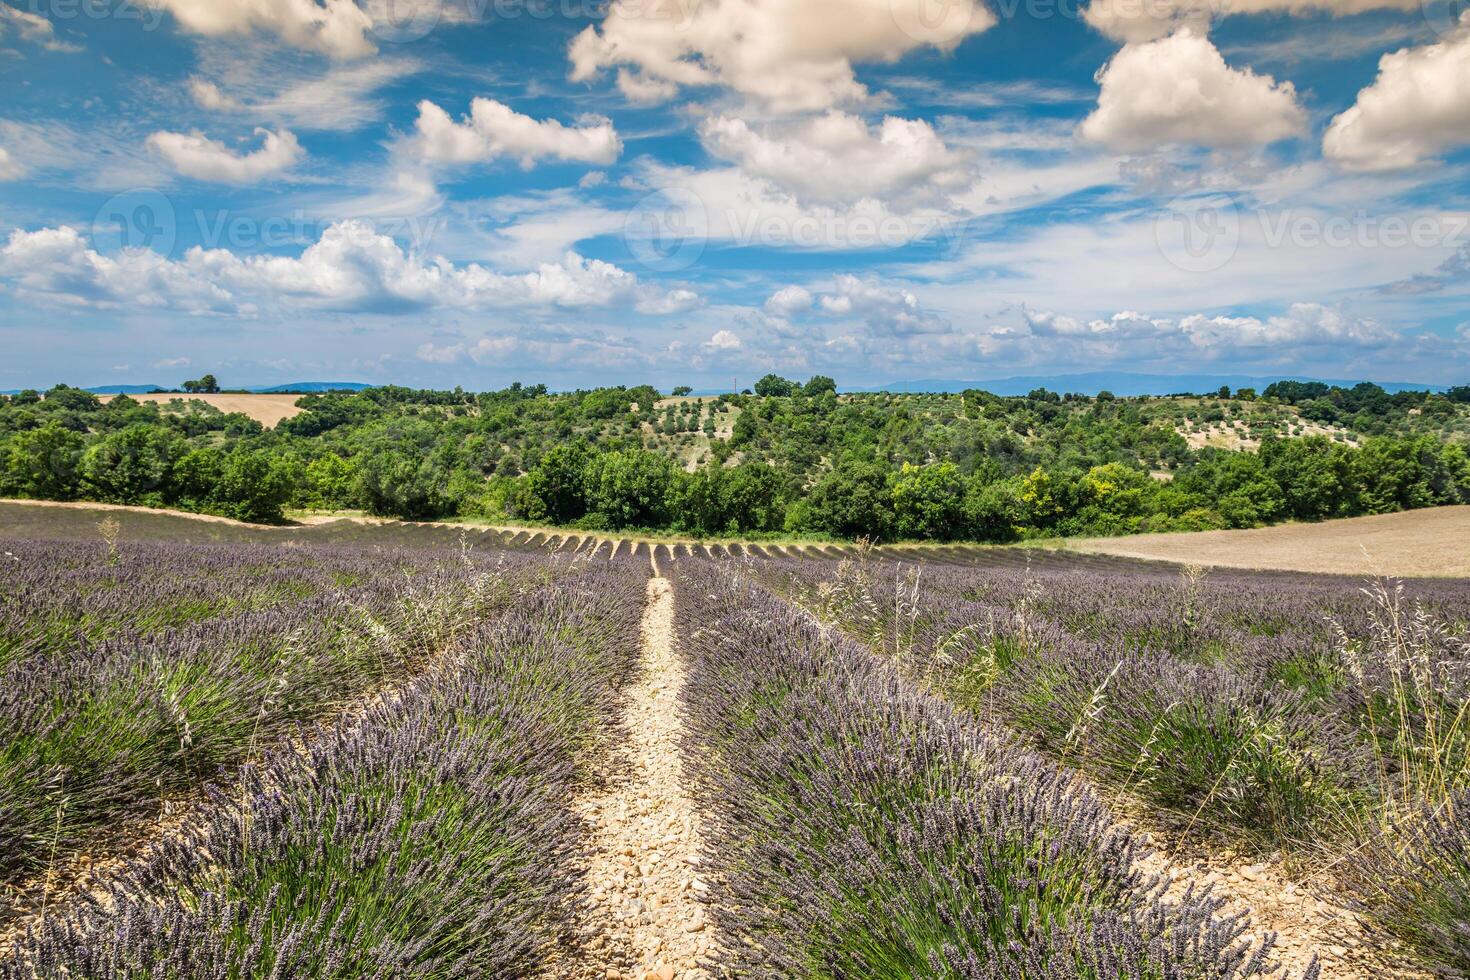 Lavendelblume blüht duftende Felder in endlosen Reihen. Valensolplateau, Provence, Frankreich, Europa. foto